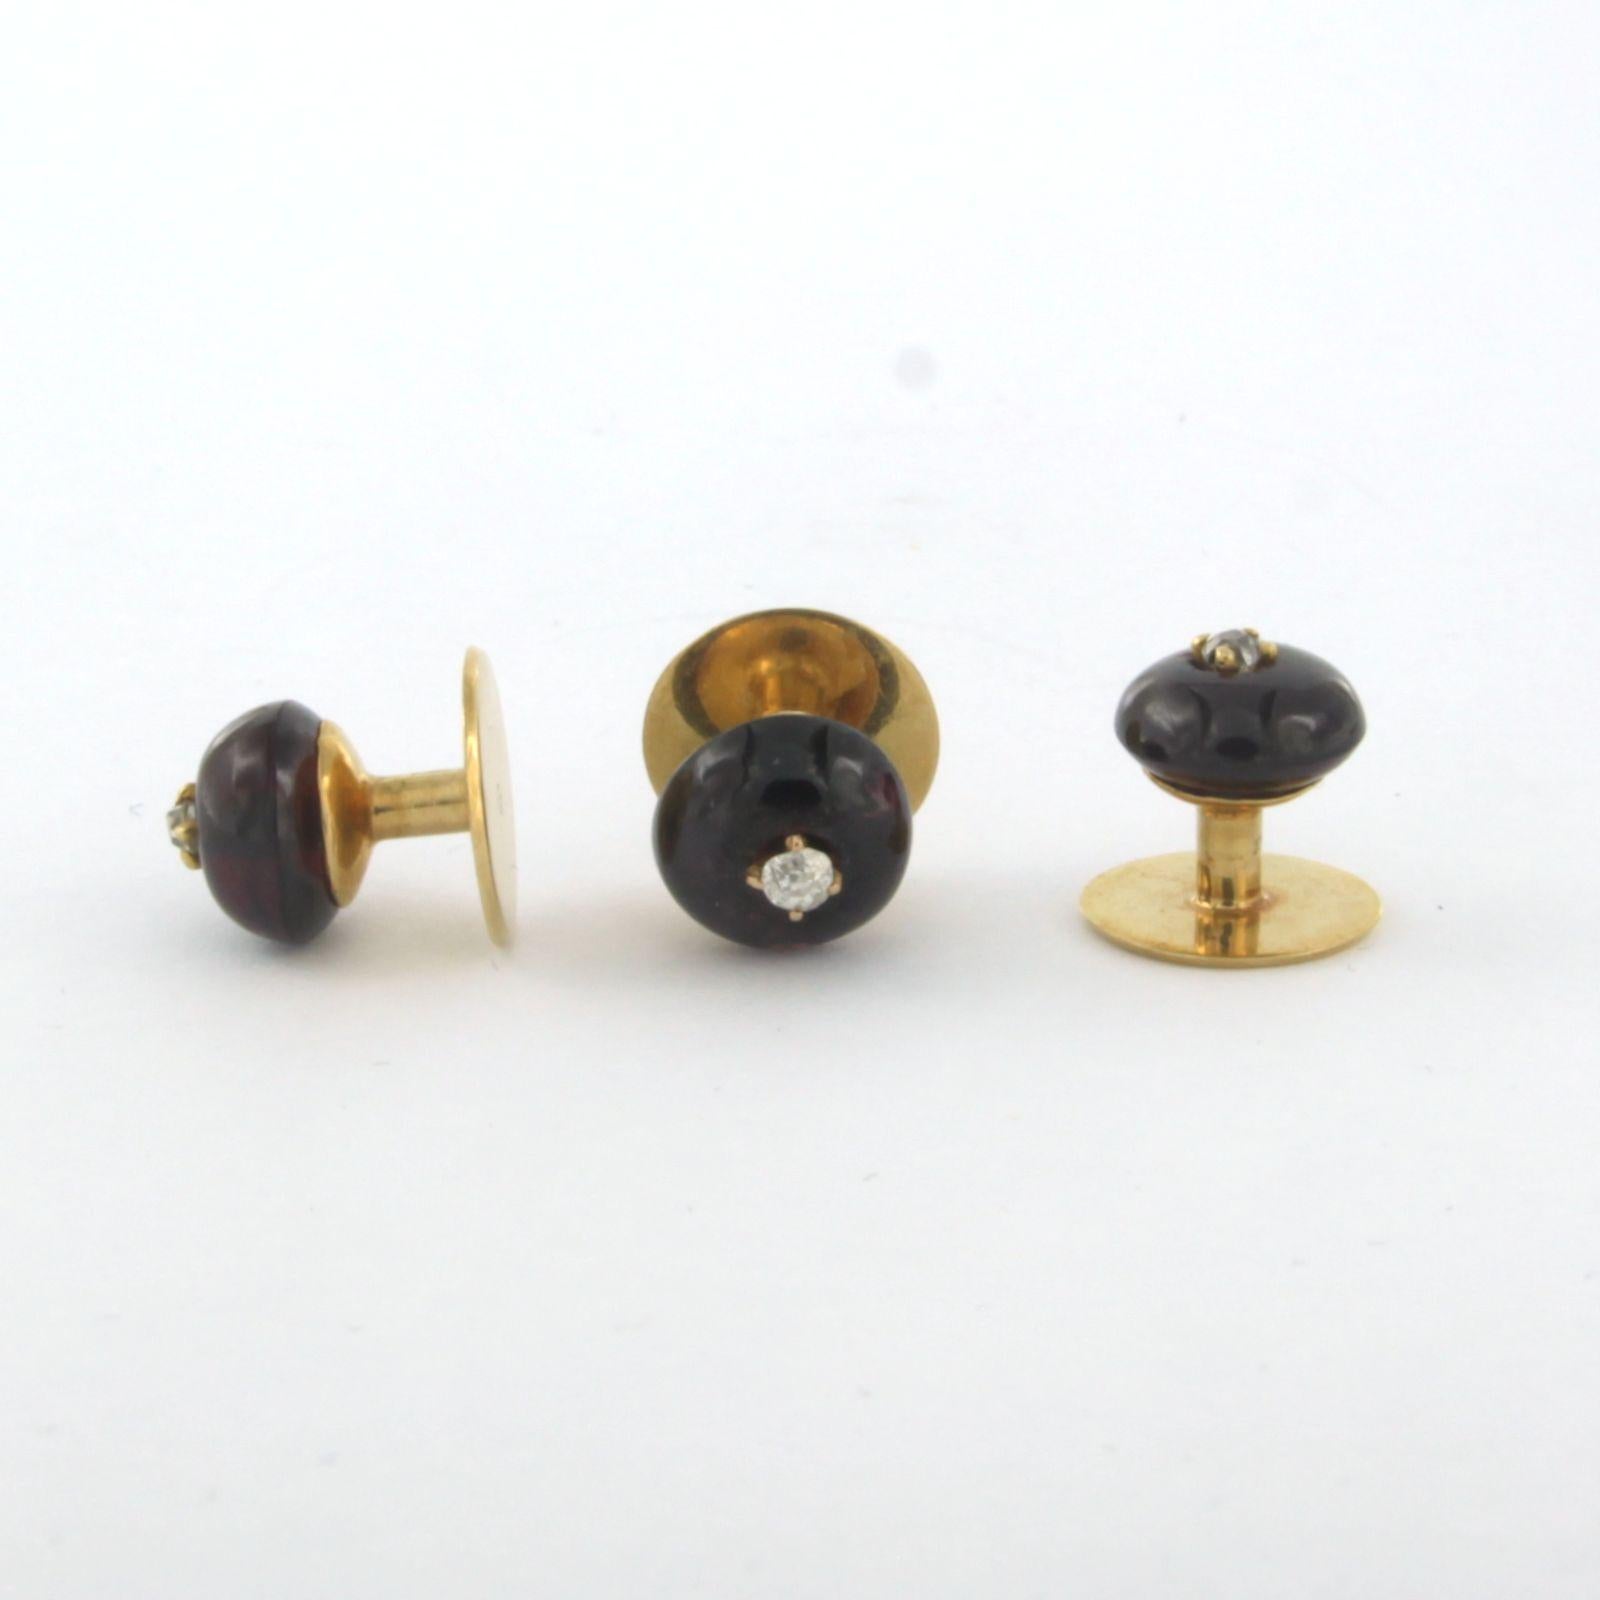 Lot de 3 boutons de collier sertis de grenat et de diamant 0,10 ct, dans un écrin authentique

description détaillée

le sommet d'un nœud de perçage est de 8,0 mm, le dos a un diamètre de 9,0 mm

Poids total 4,0 grammes

set avec

- 3 x 8,0 mm